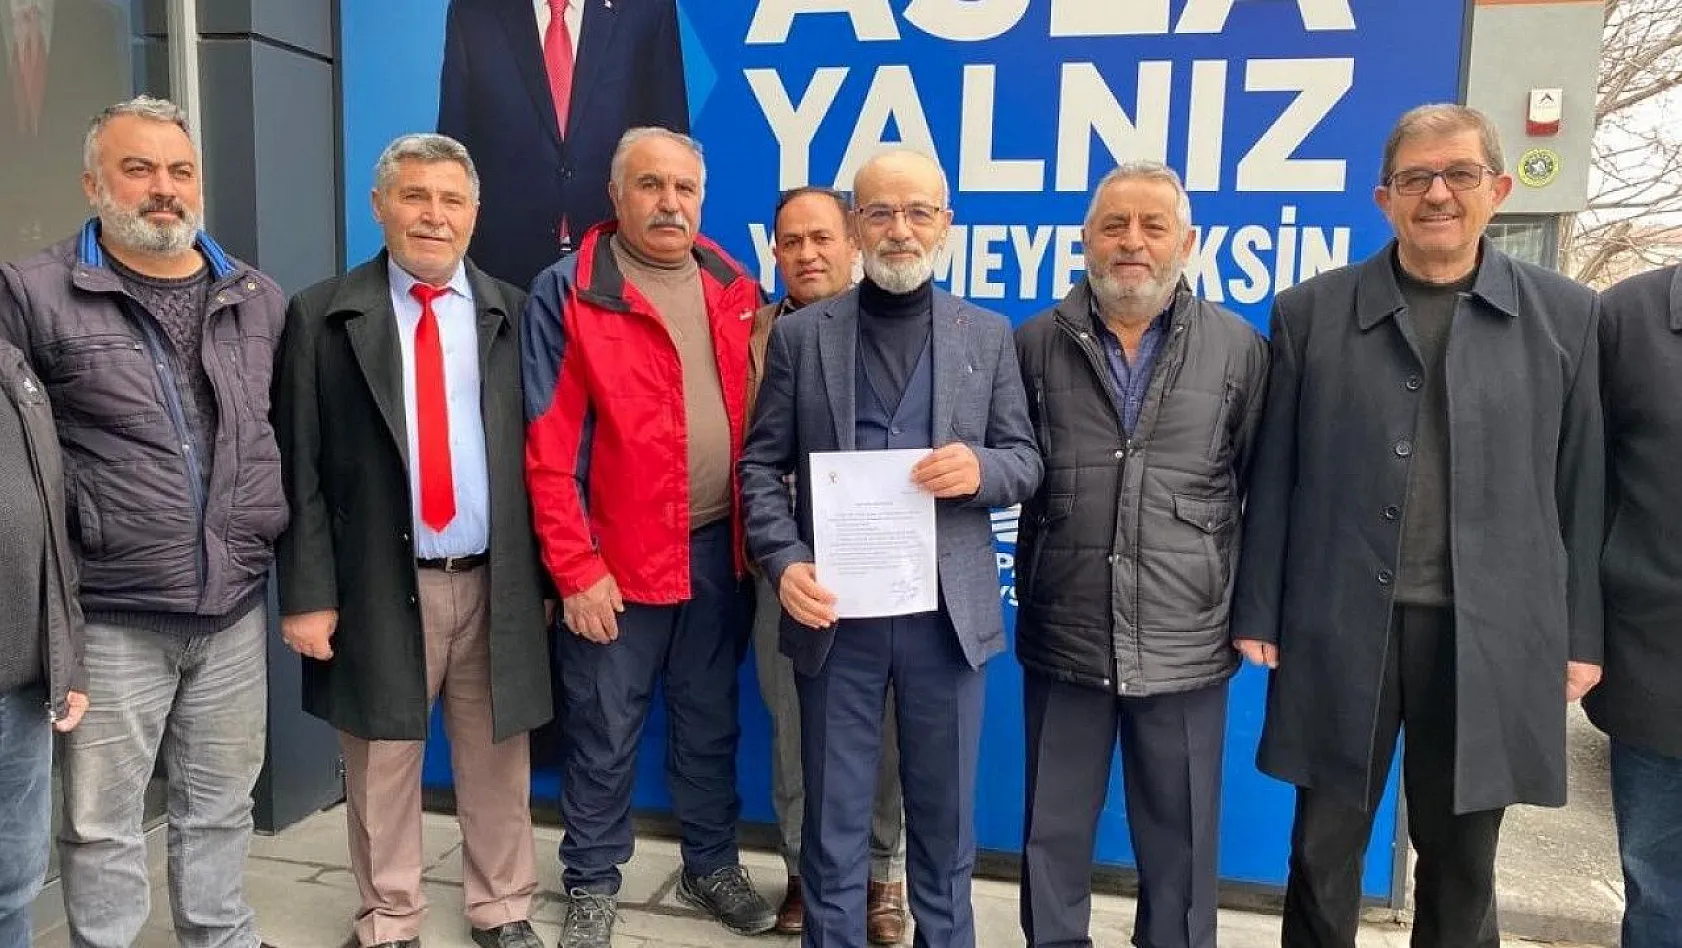 Yozgatlılar Konfederasyonu Başkanı, Kayseri'den aday adayı oldu!